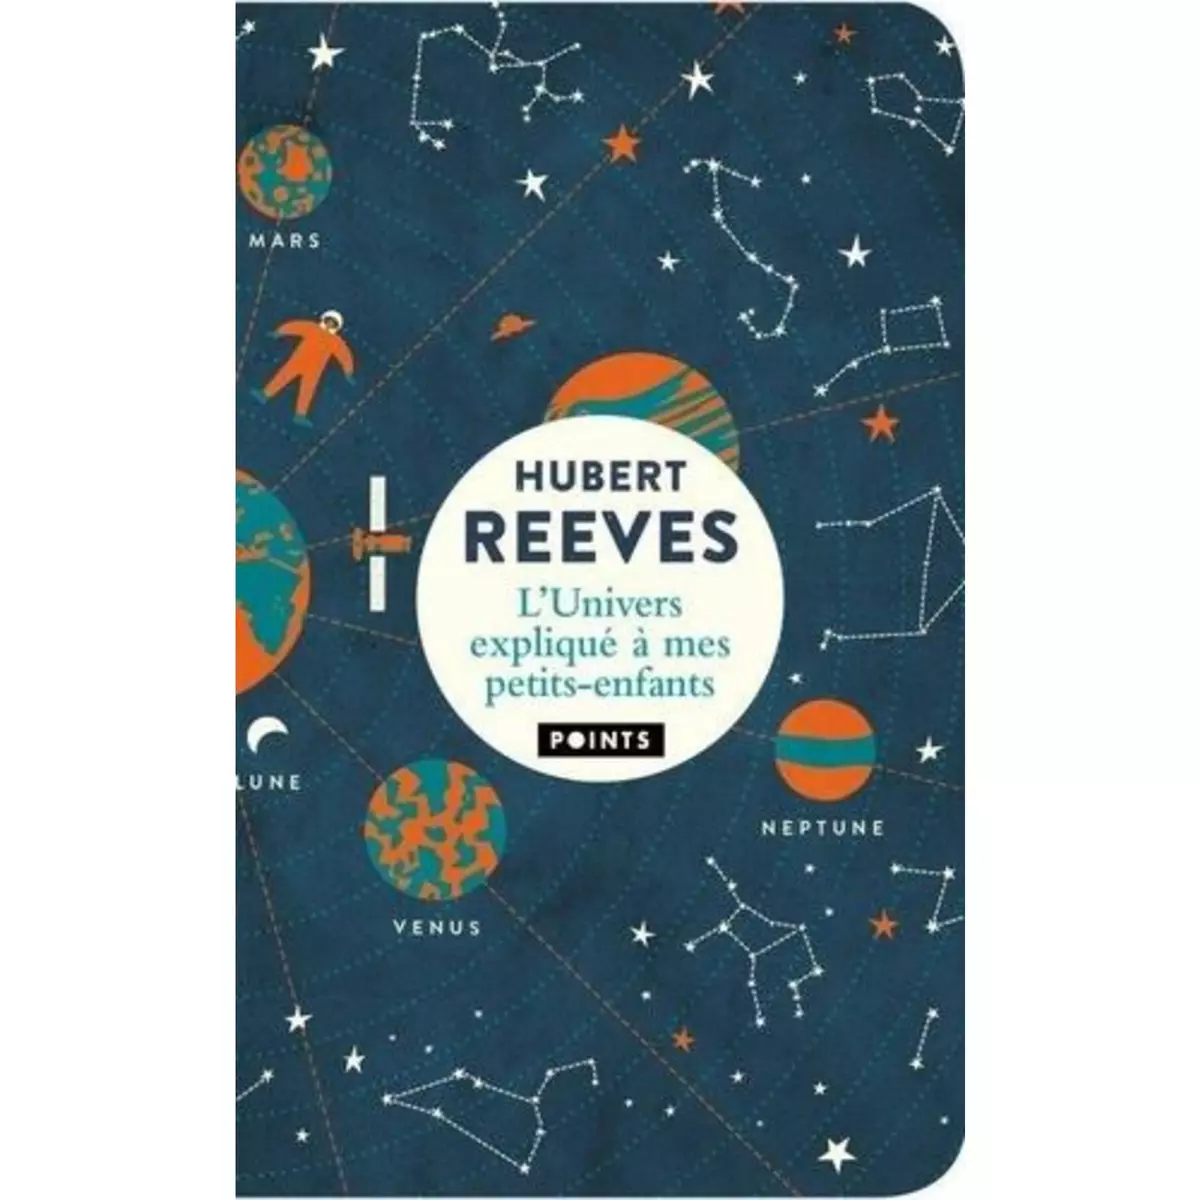  L'UNIVERS EXPLIQUE A MES PETITS-ENFANTS, Reeves Hubert